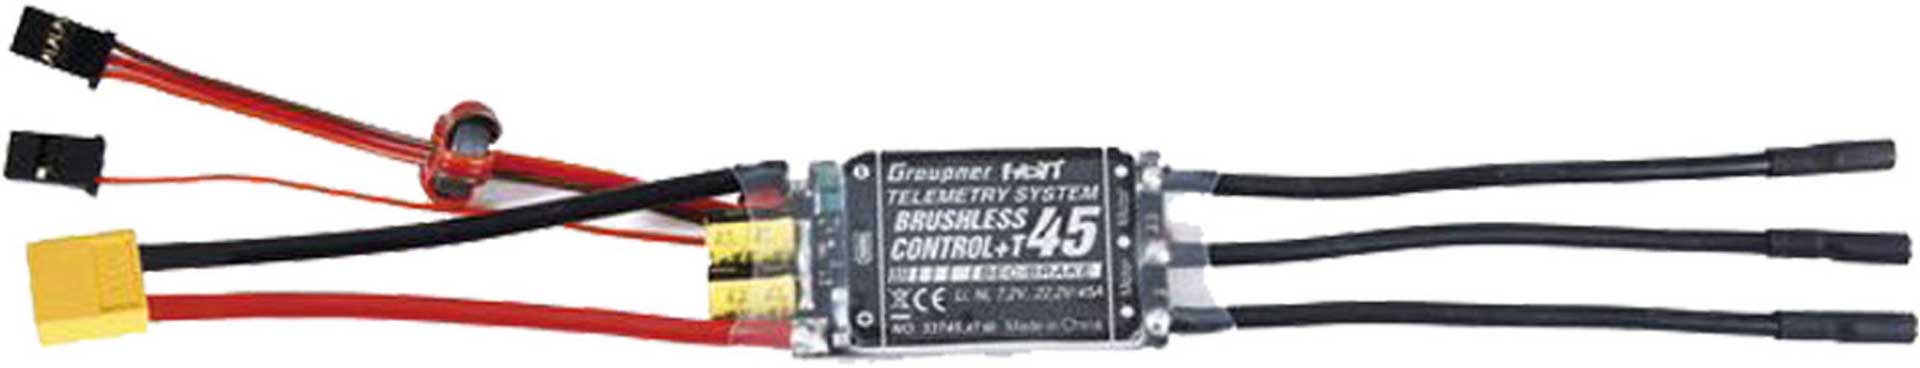 GRAUPNER BRUSHLESS CONTROL+ T 45 BEC G2 XT-60 REGLER